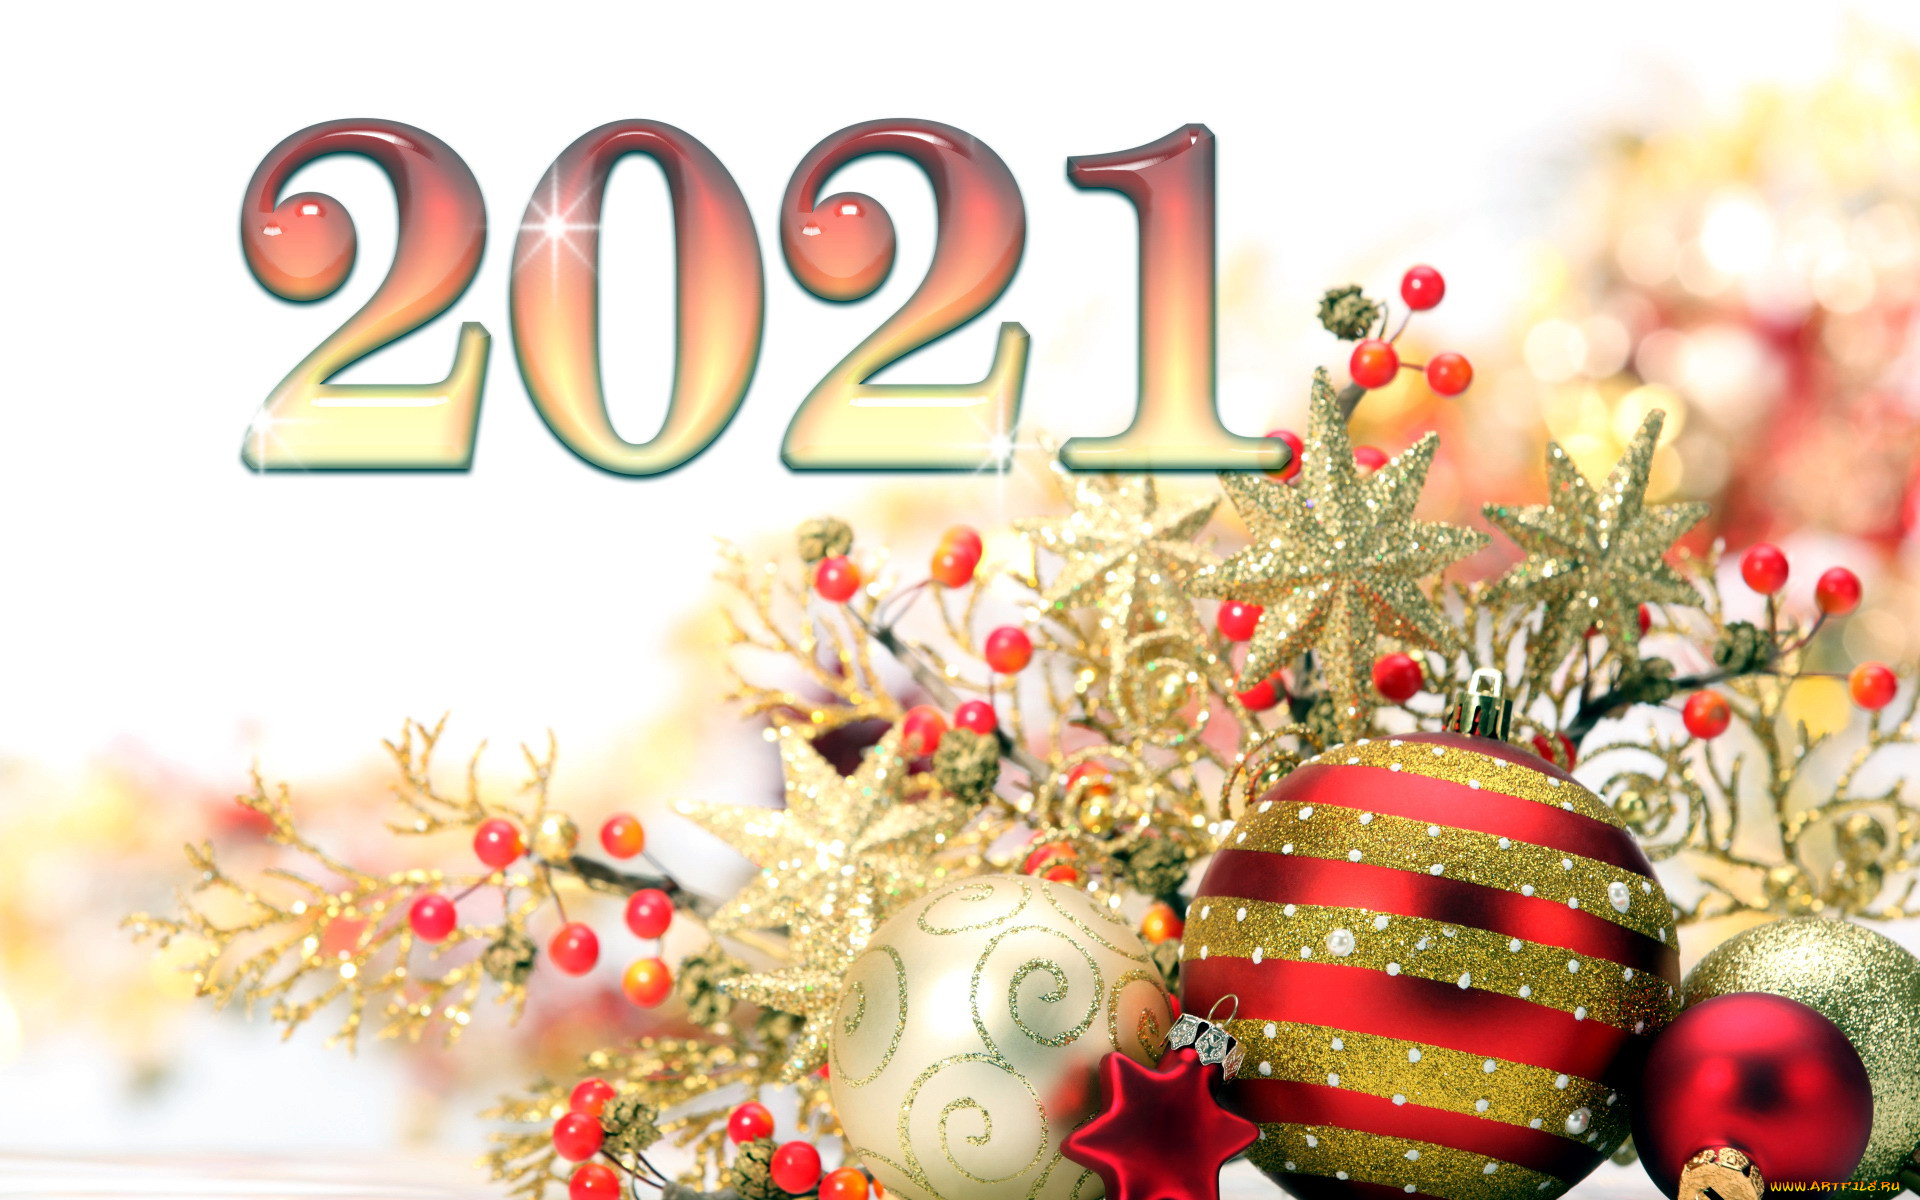 Новый год 2021 россия. Обои на новый год 2021. Новогодние картинки 2021 год. Новогодняя Москва открытка. Картинки с днём нового года.